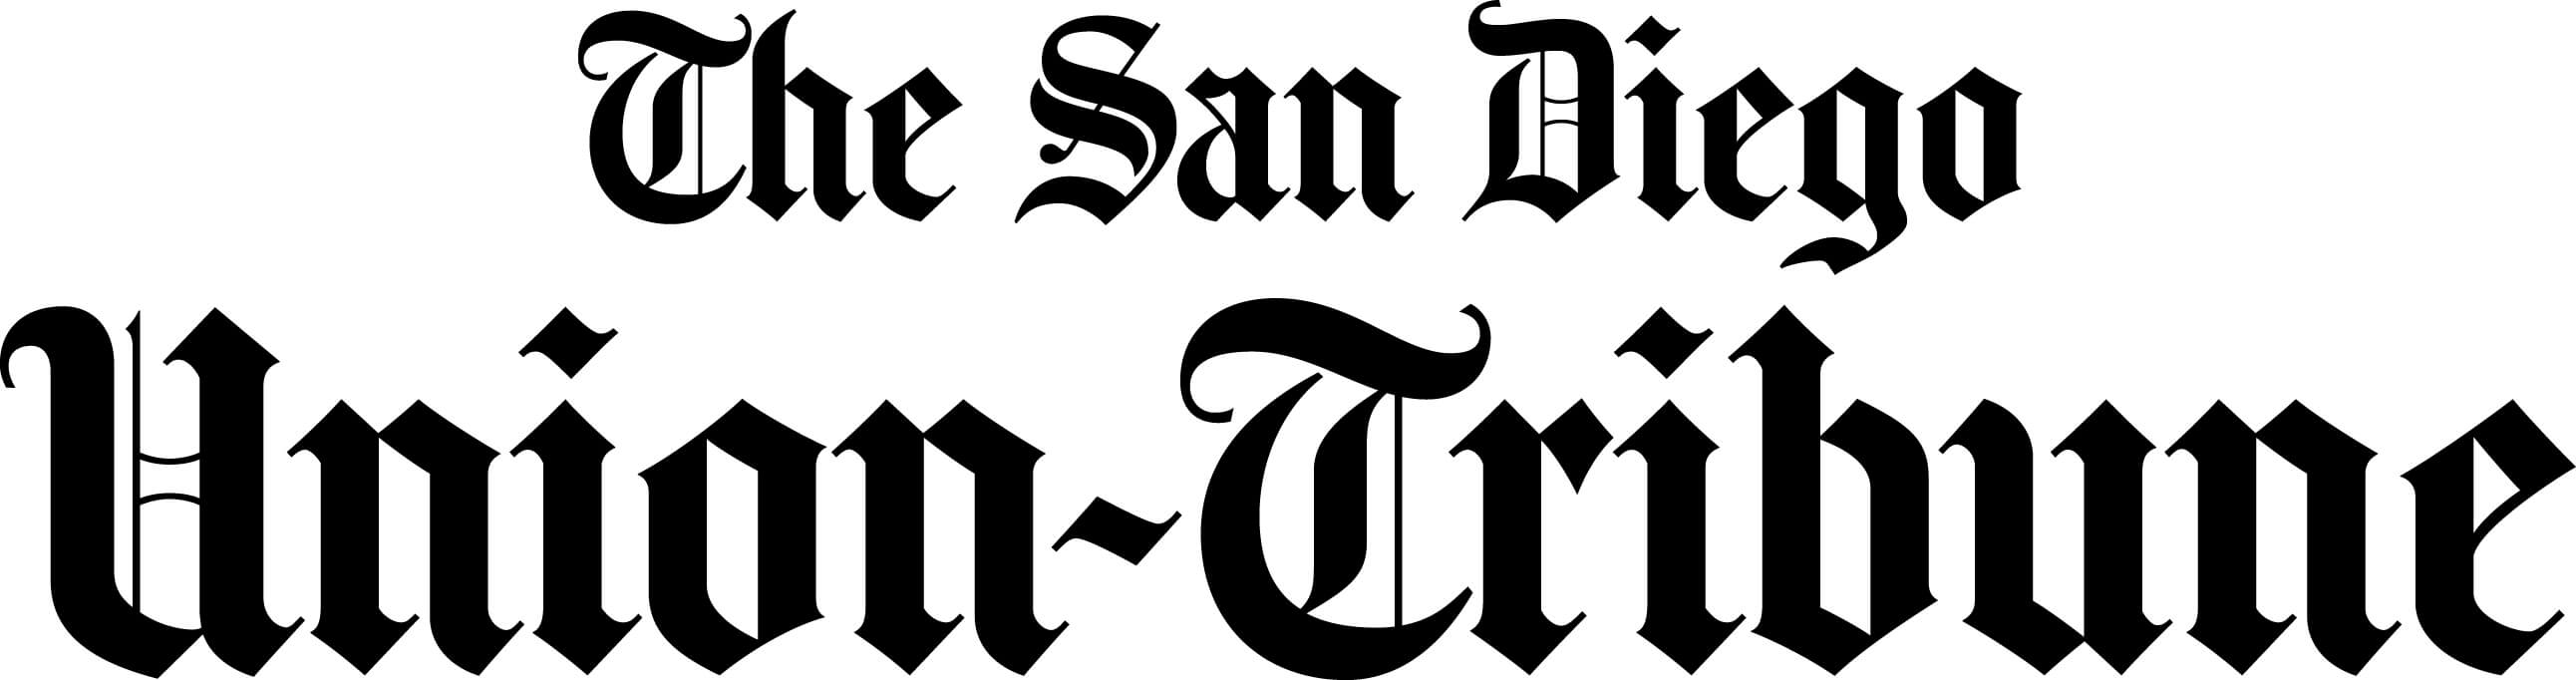 San Diego News-Tribune logo